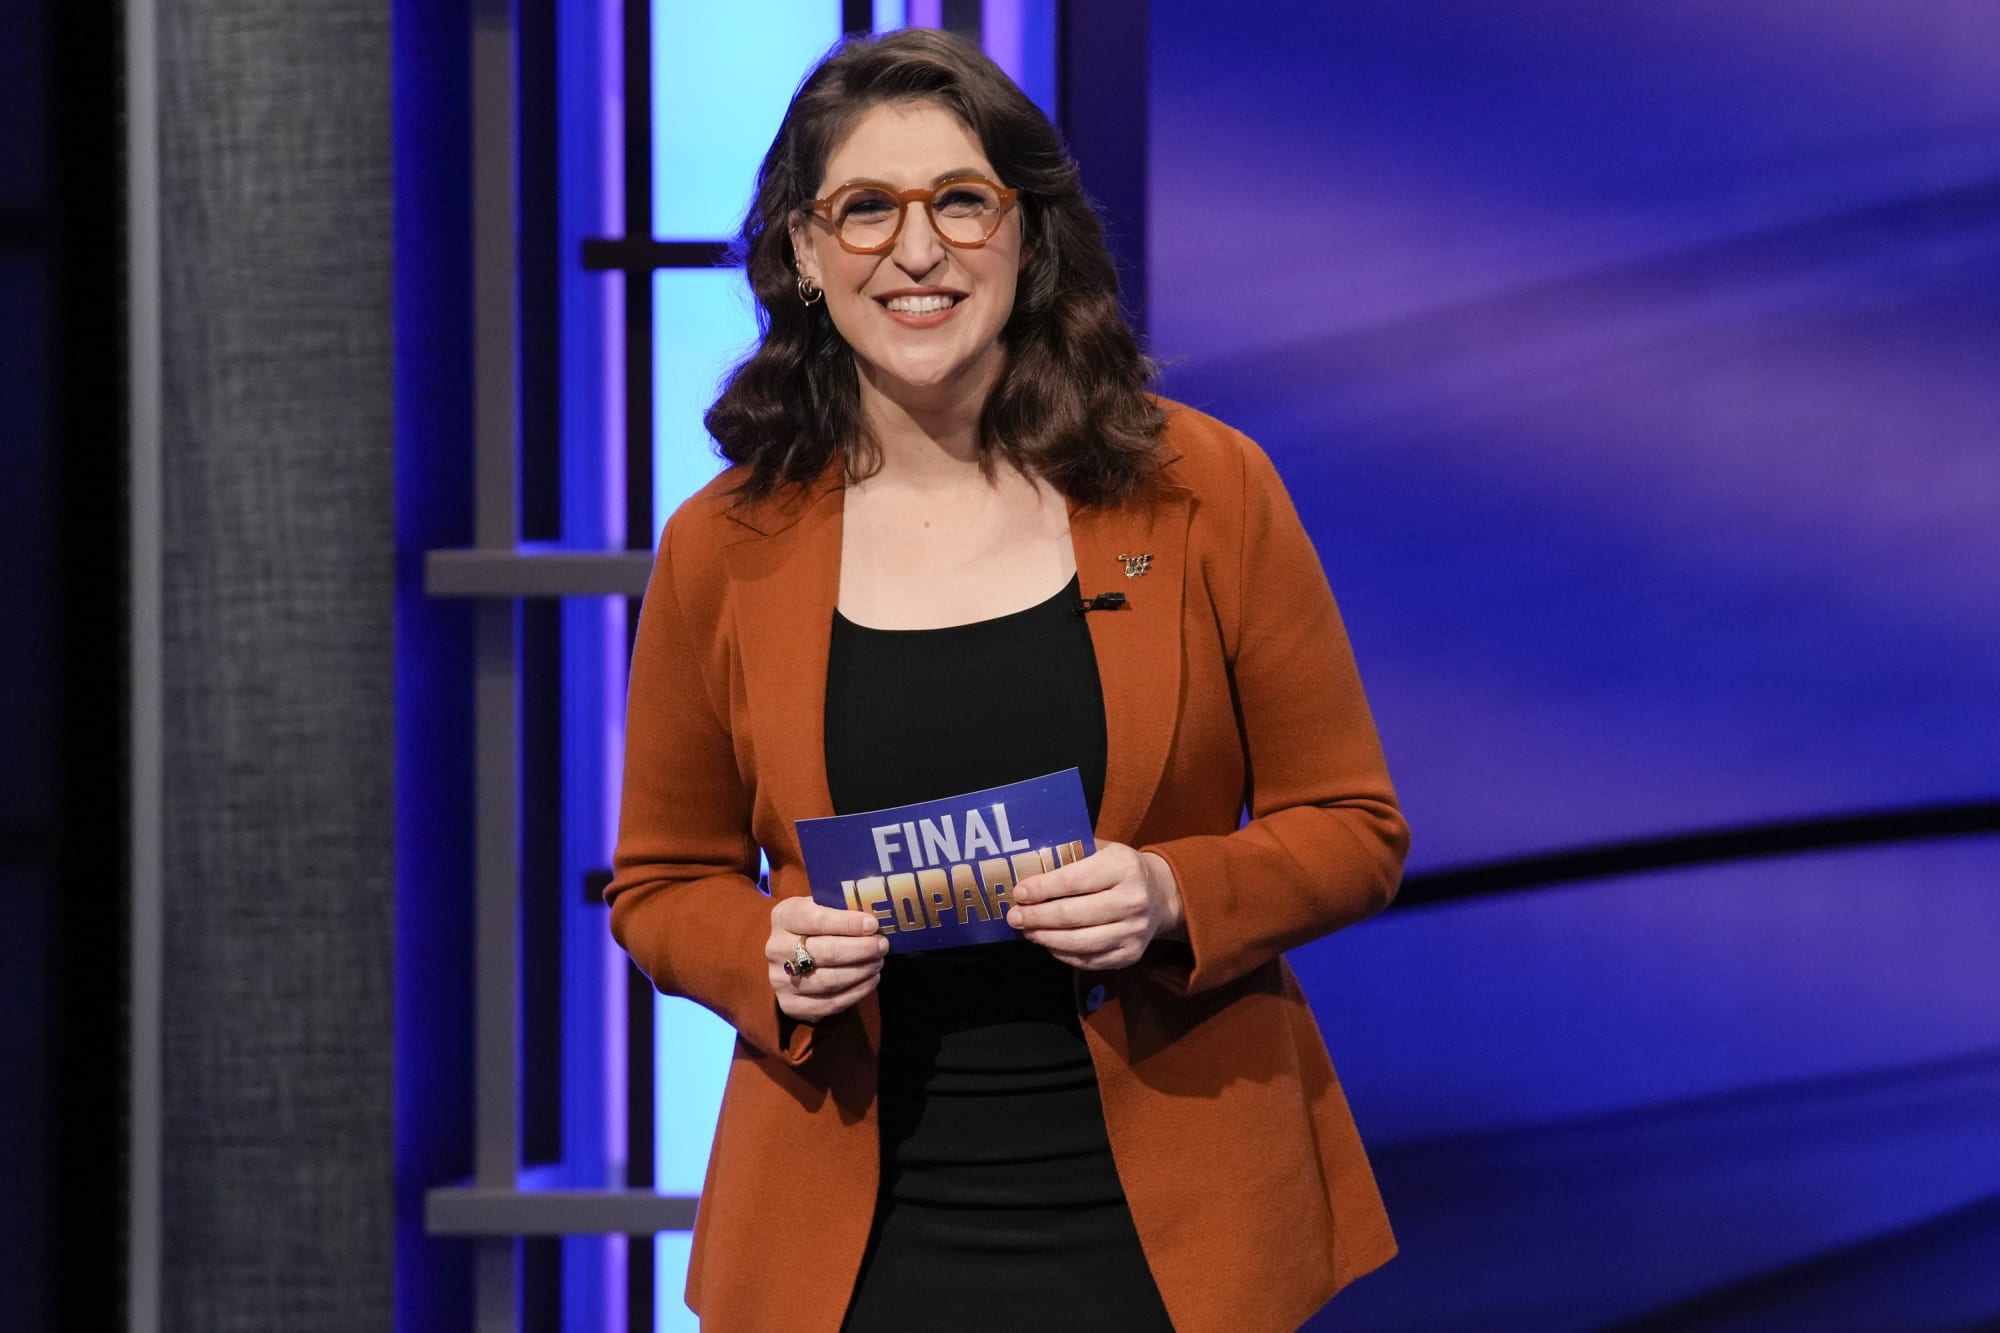 Who won Jeopardy! tonight, May 11, 2022?